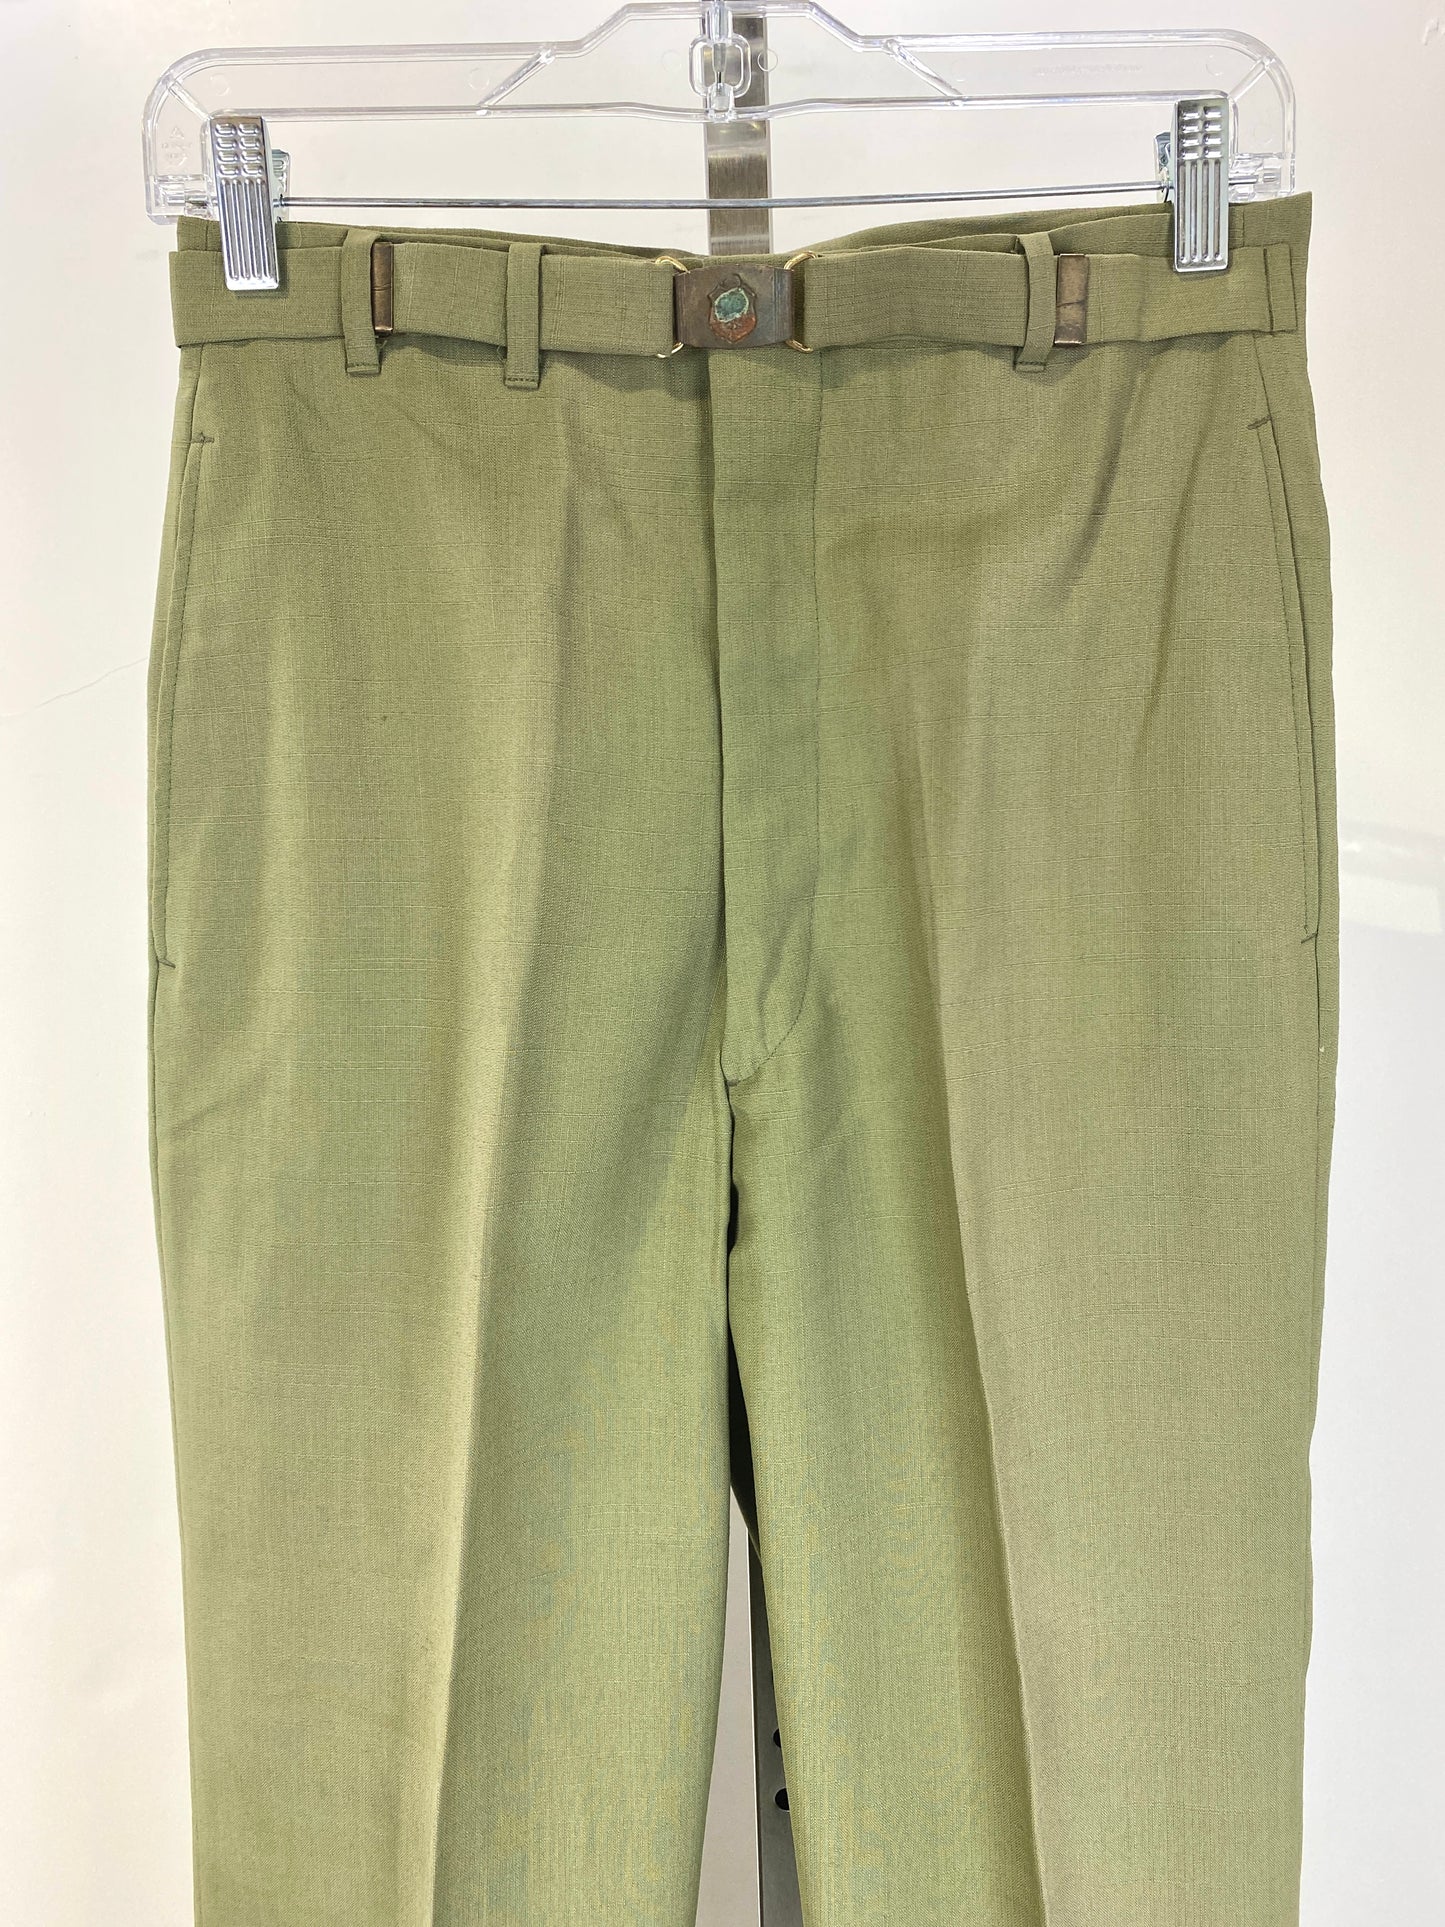 Vintage 1960s Deadstock Green Straight-Leg Slacks, Men's Polyester Trousers, NOS 